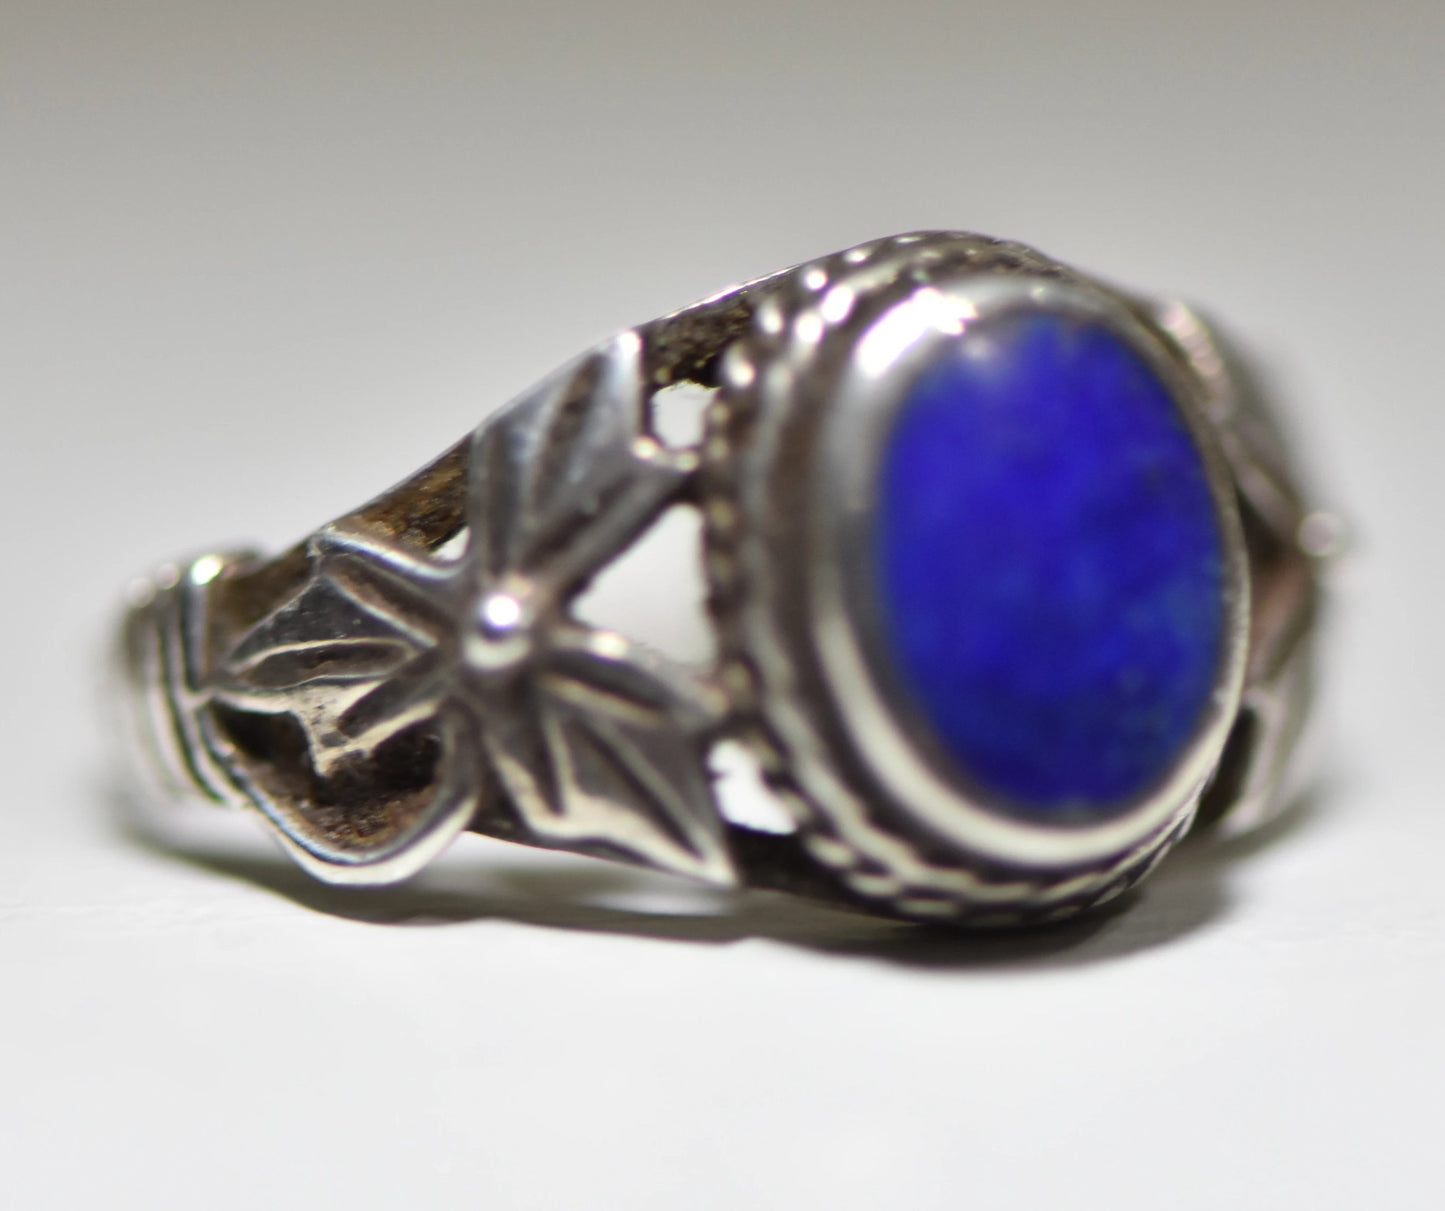 Blue Lapis ring vintage floral design sterling silver women girls